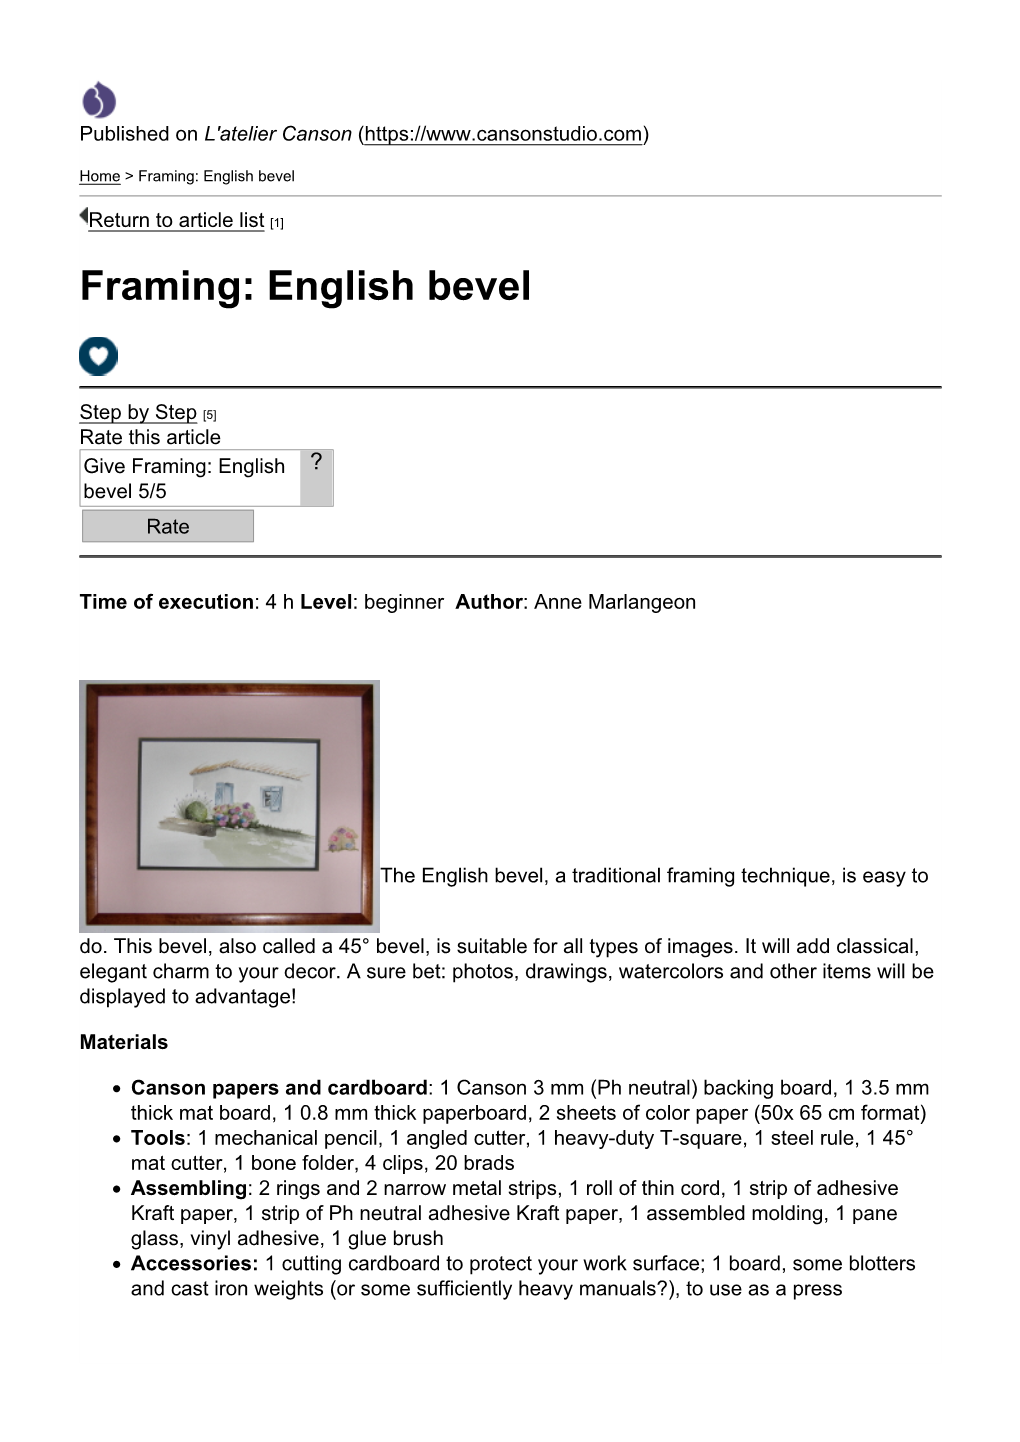 Framing: English Bevel